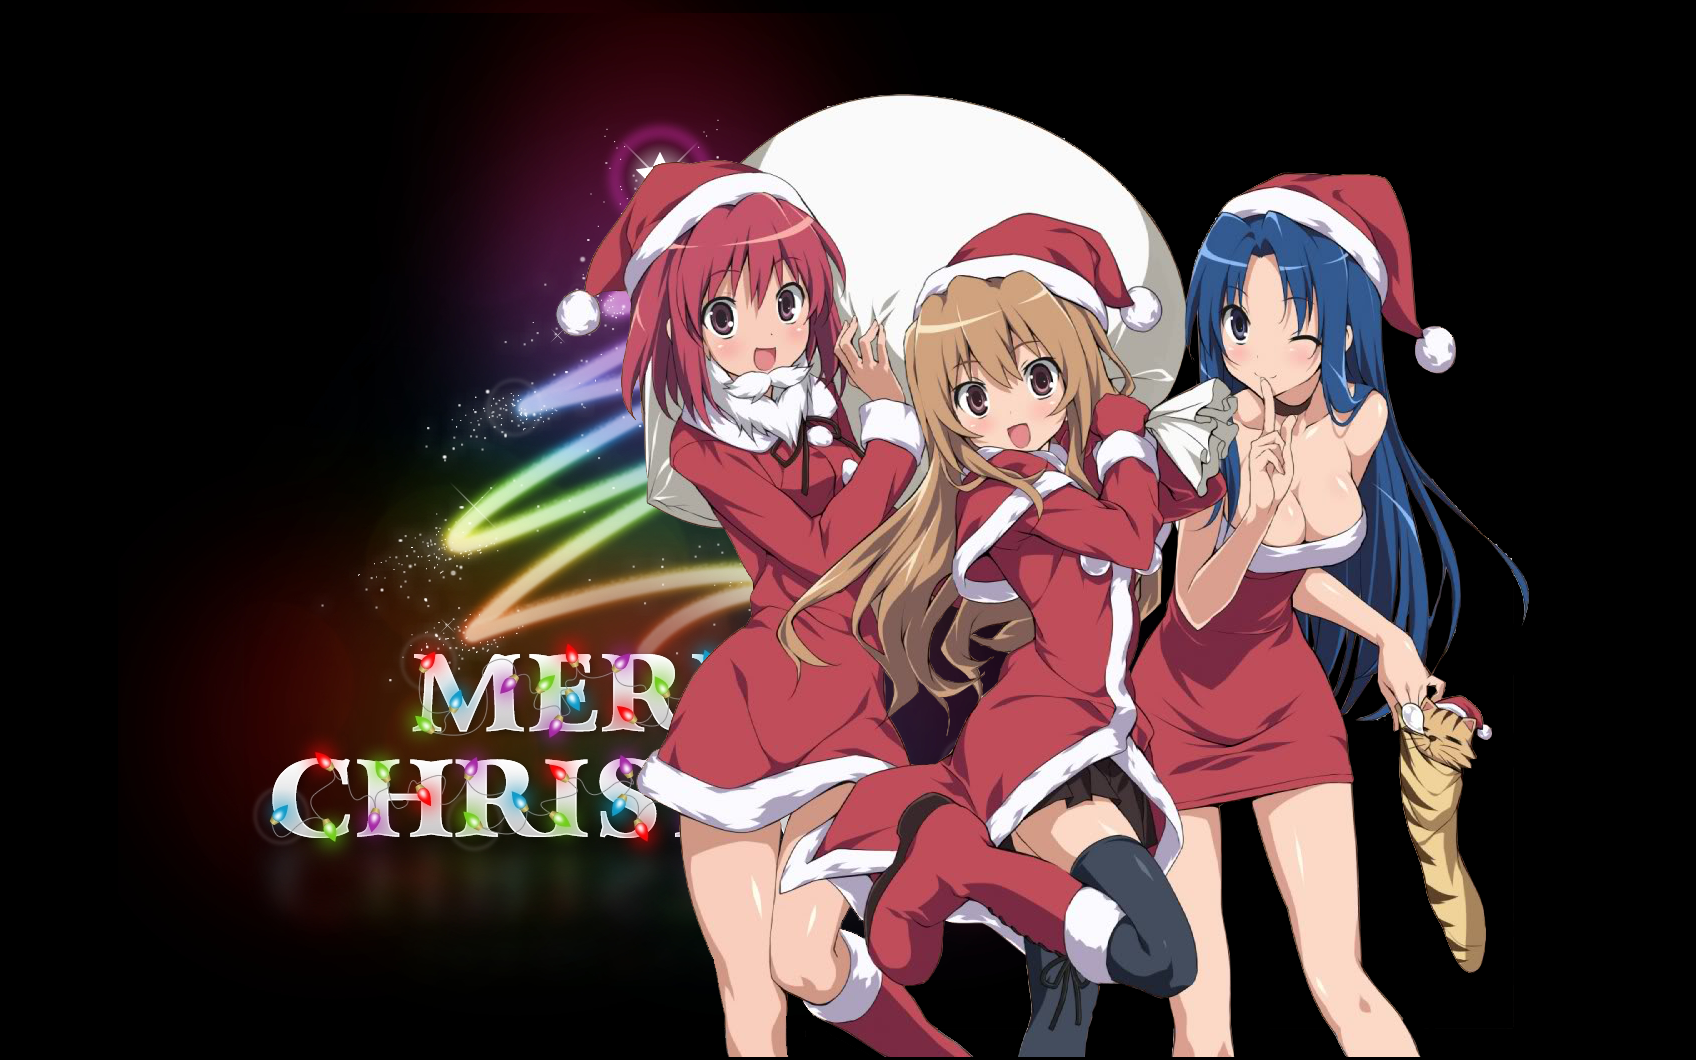 44+] Anime Christmas Wallpapers HD